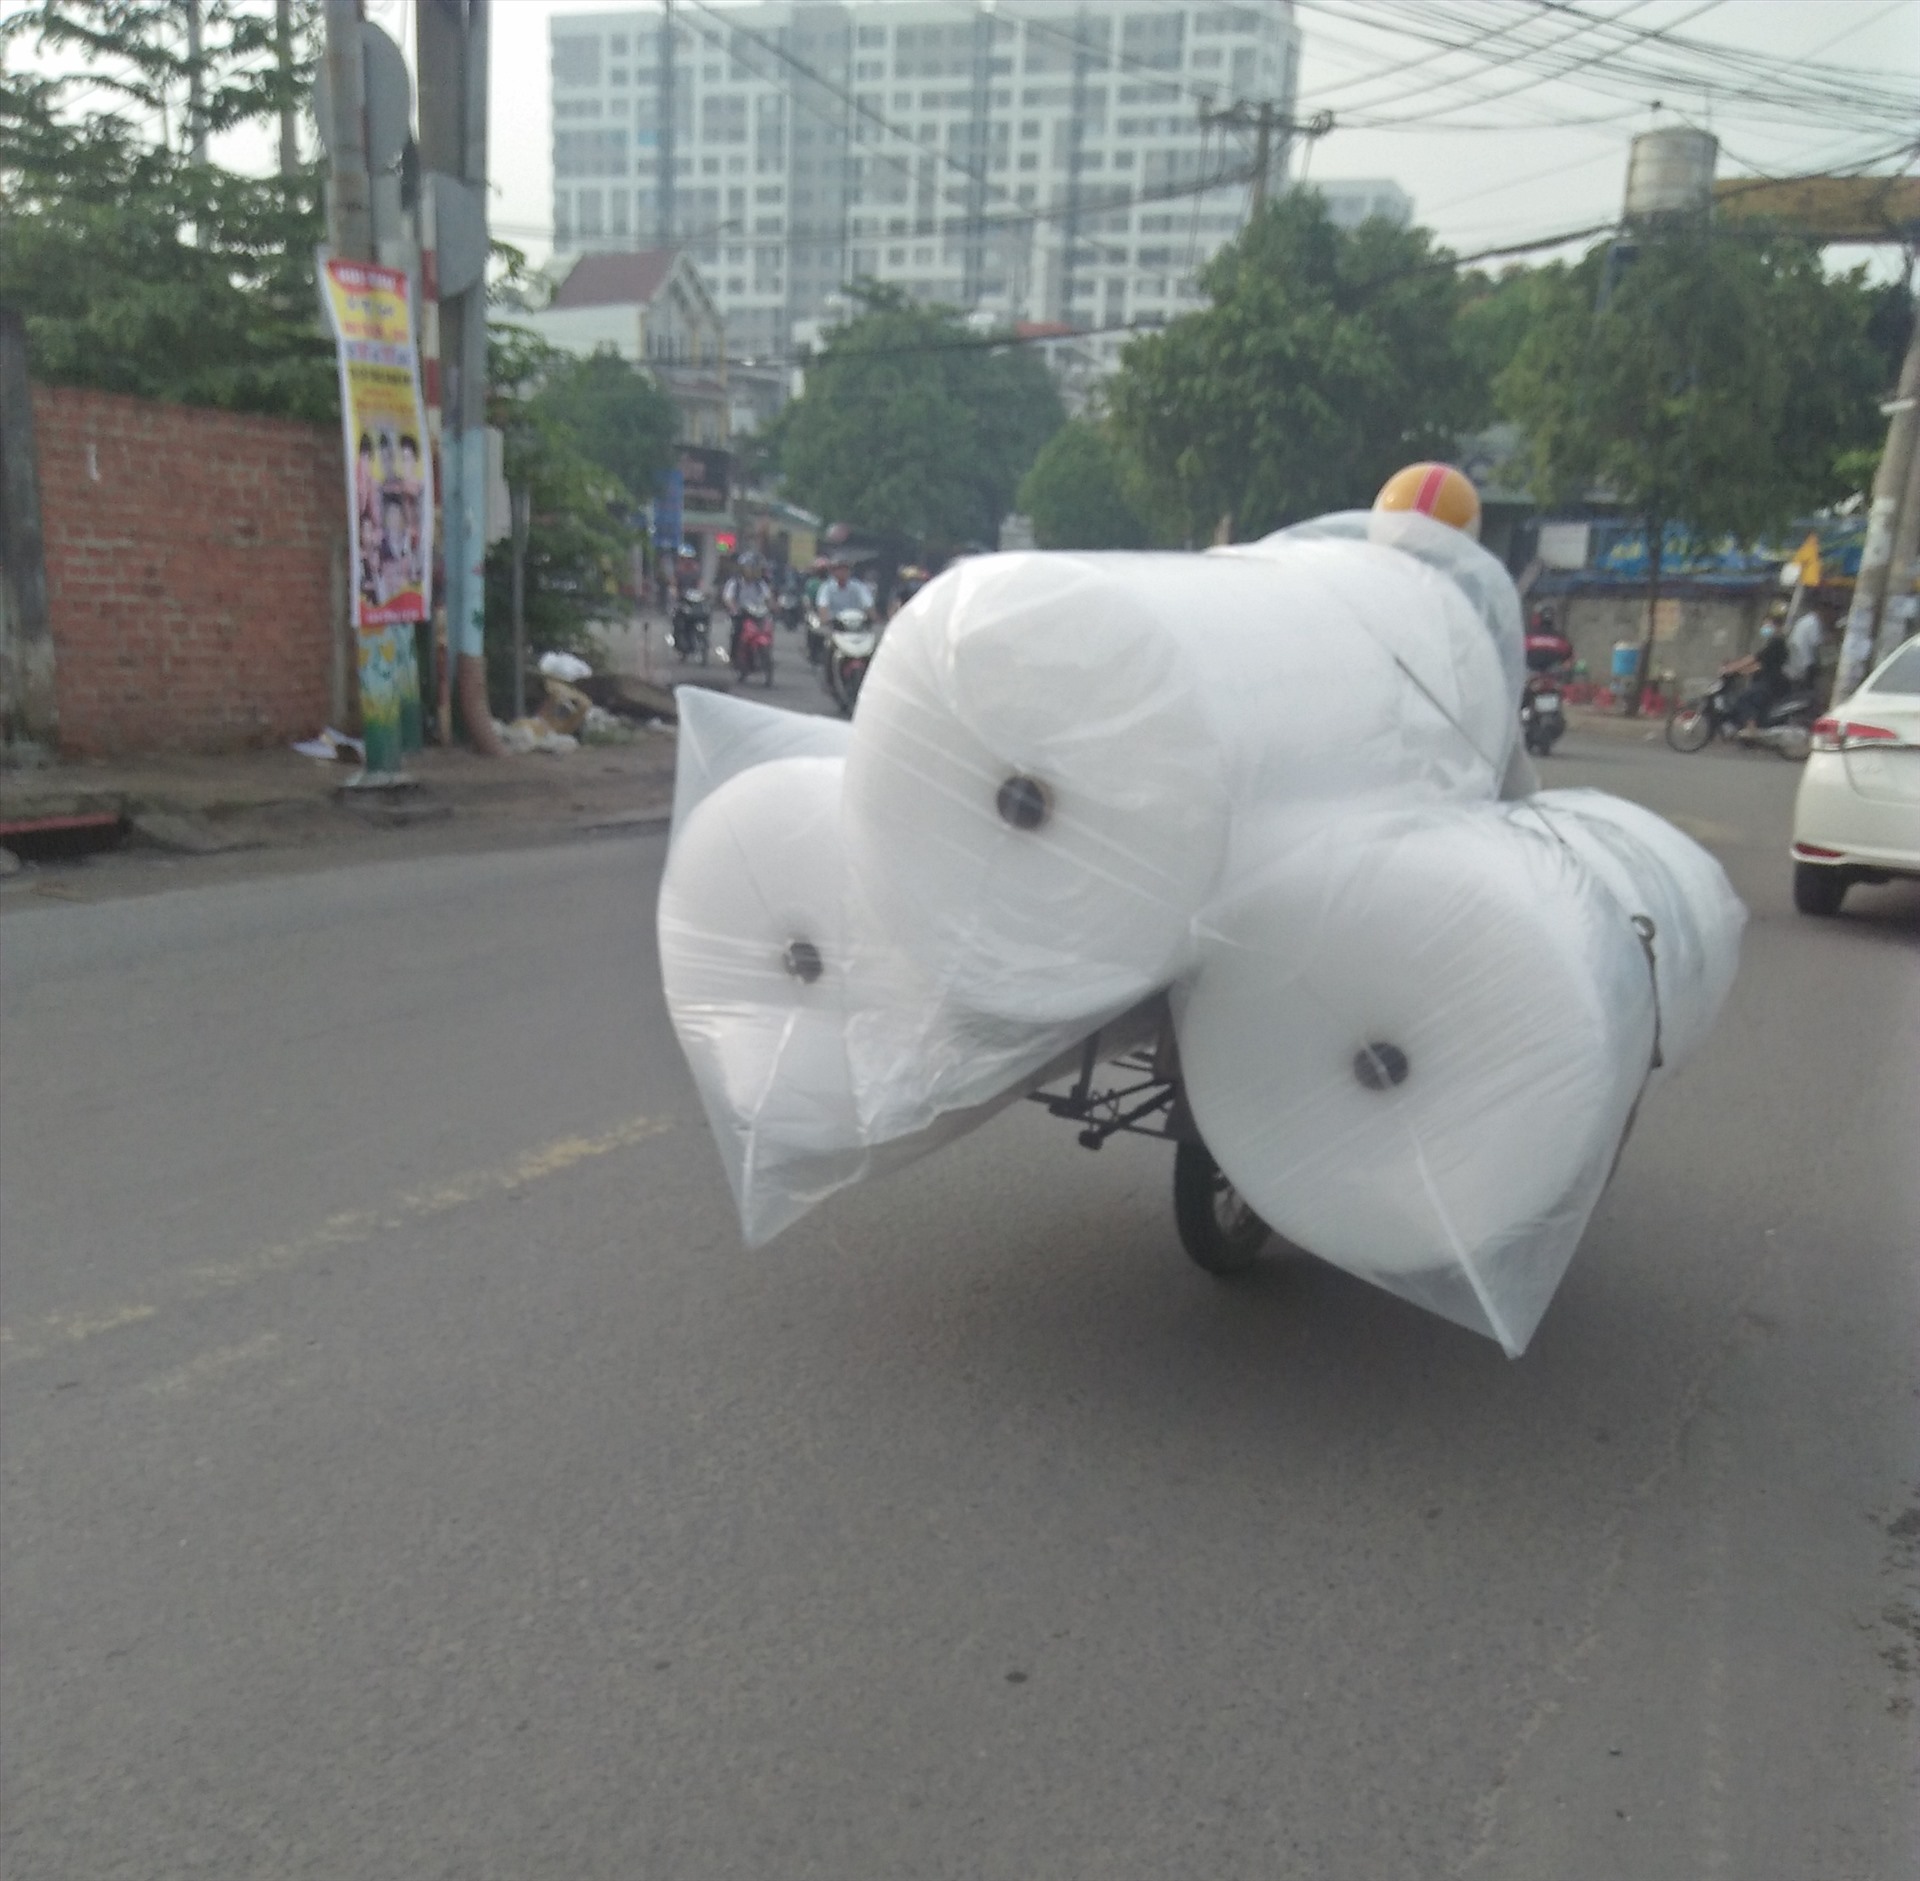 Người đi xe máy chở 3 cuộn hàng cồng kềnh chạy như xiếc trên đường Đào Trinh Nhất, Thủ Đức, TPHCM ( ảnh chụp sáng 30.6). Ảnh: Minh Khang